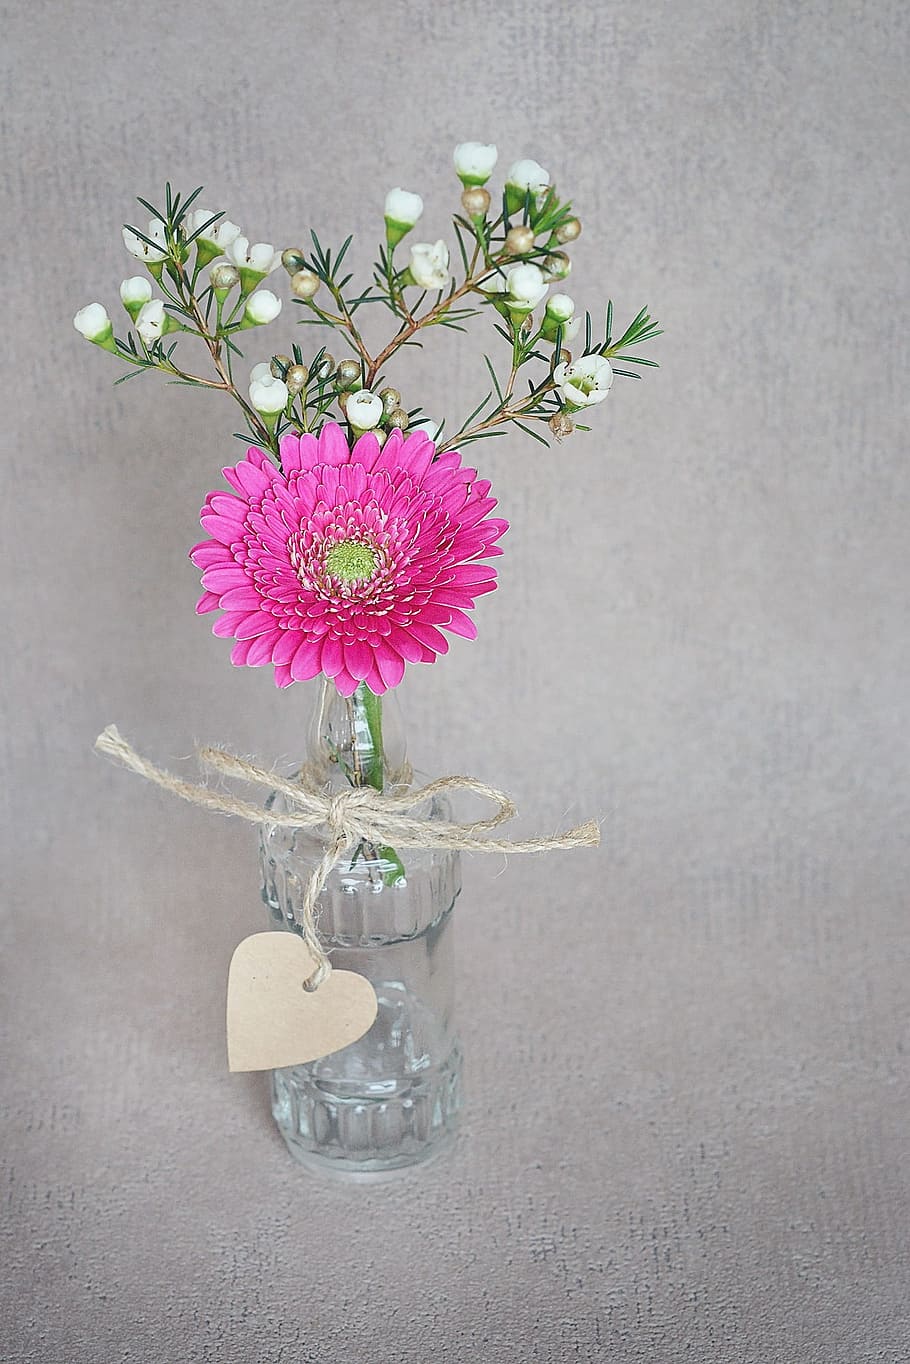 ピンク, ガーベラデイジーの花, 白, エリカの花, クリア, ガラス瓶のセンターピース, ガーベラ, フランジパニ, 花, 花瓶